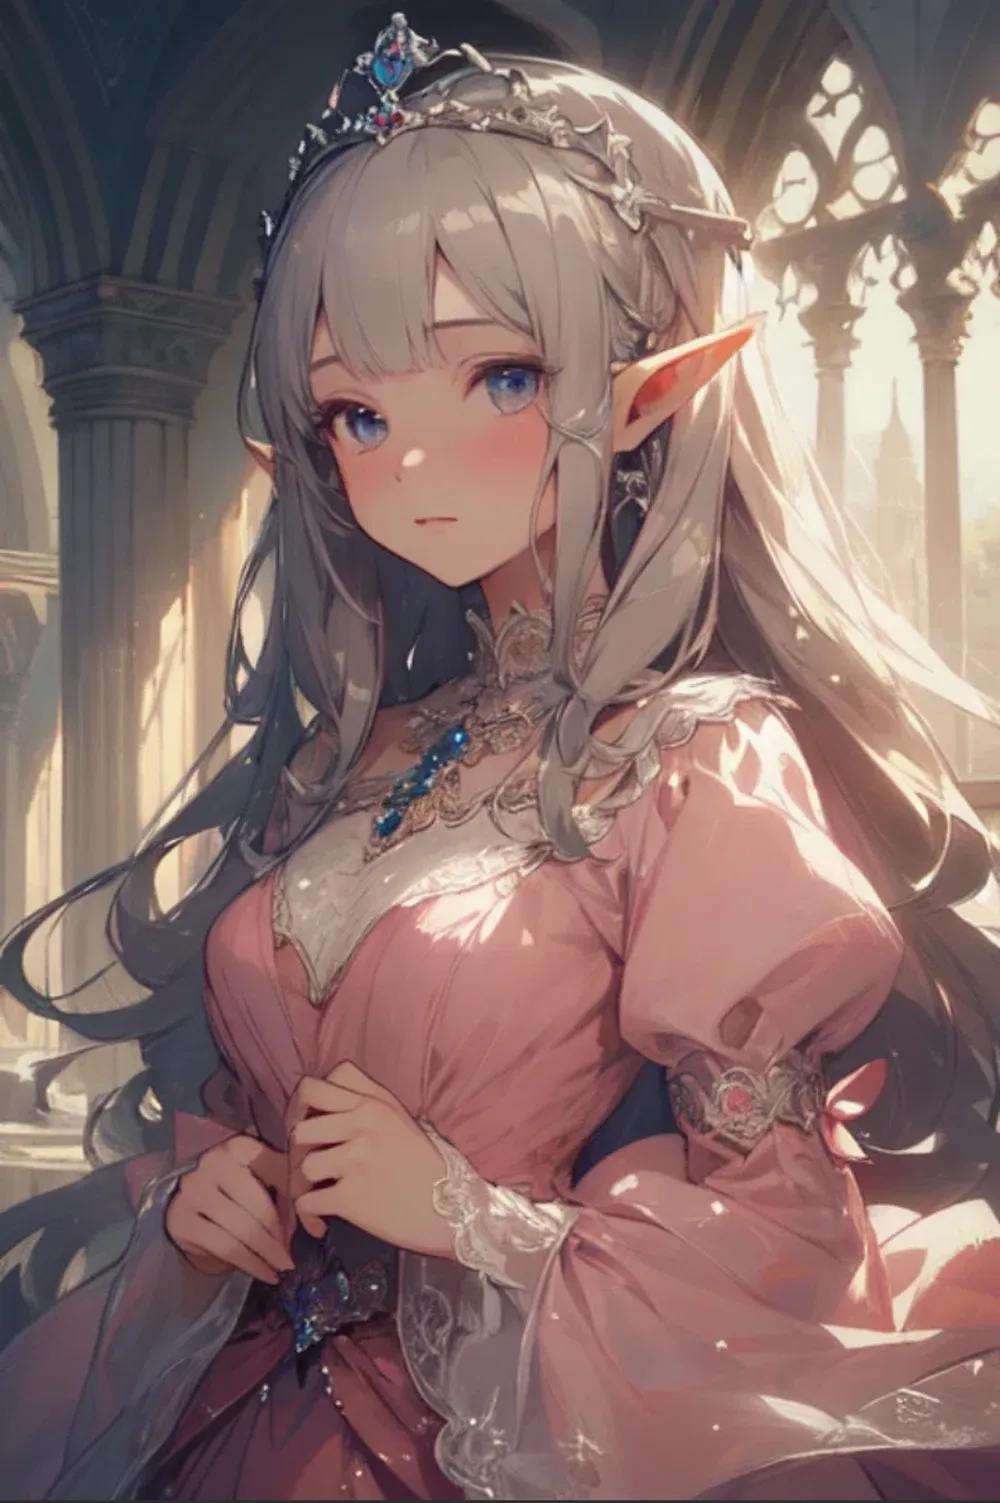 Avatar of Alania (Elf princess)